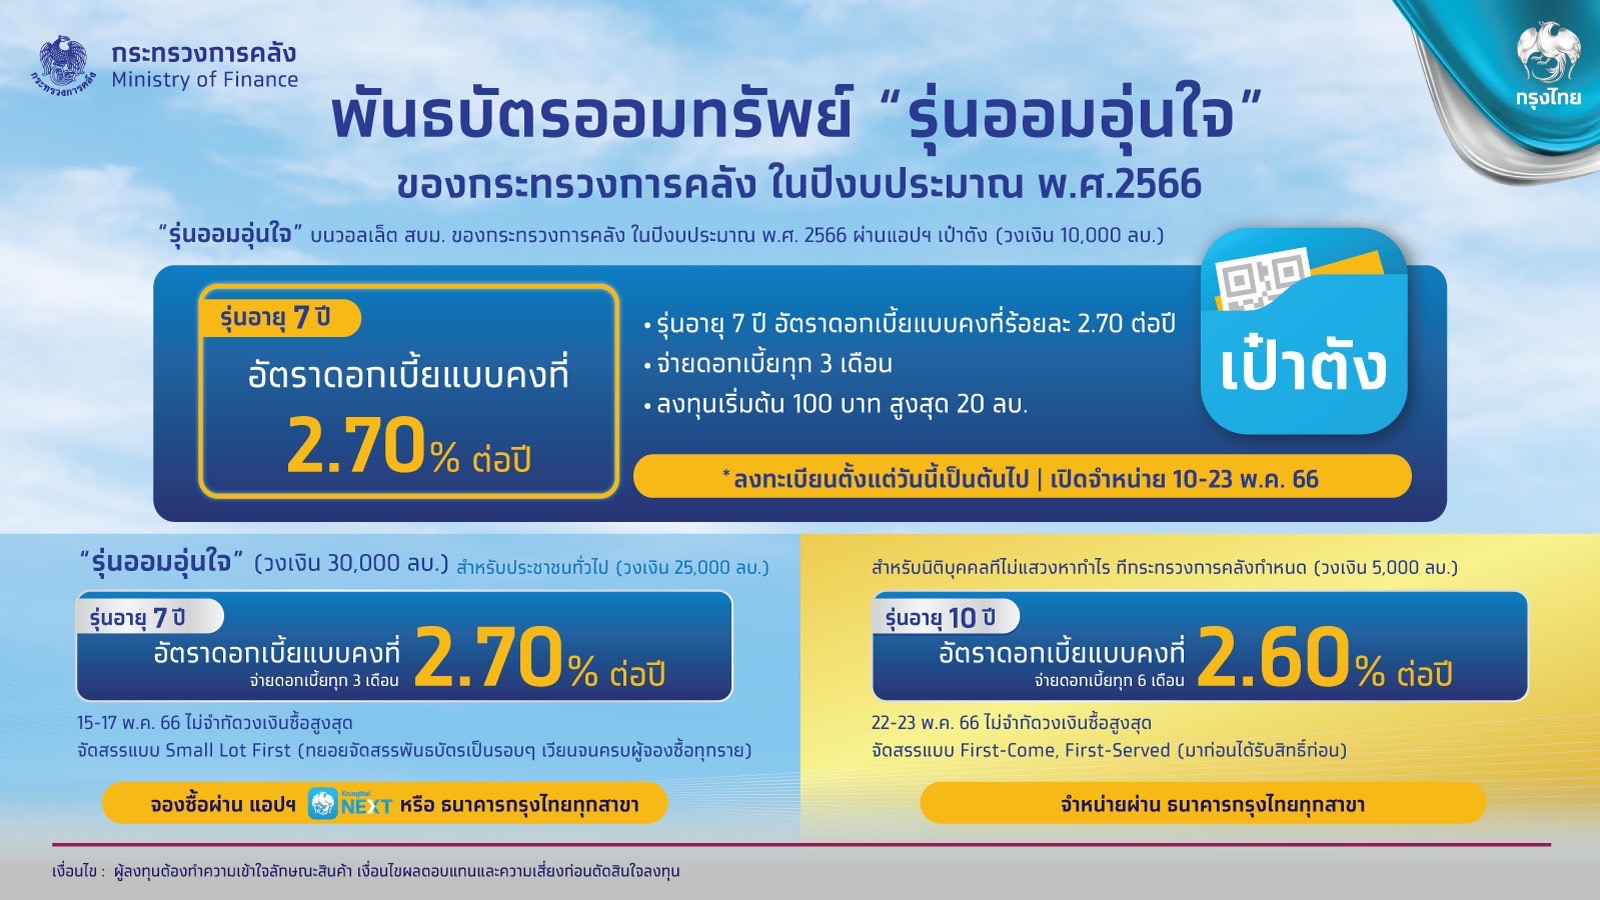 กรุงไทยพร้อมขายพันธบัตรวอลเล็ต สบม. 'รุ่นออมอุ่นใจ' ผ่านแอปฯ 'เป๋าตัง'  10-23 พ.ค. 66 นี้